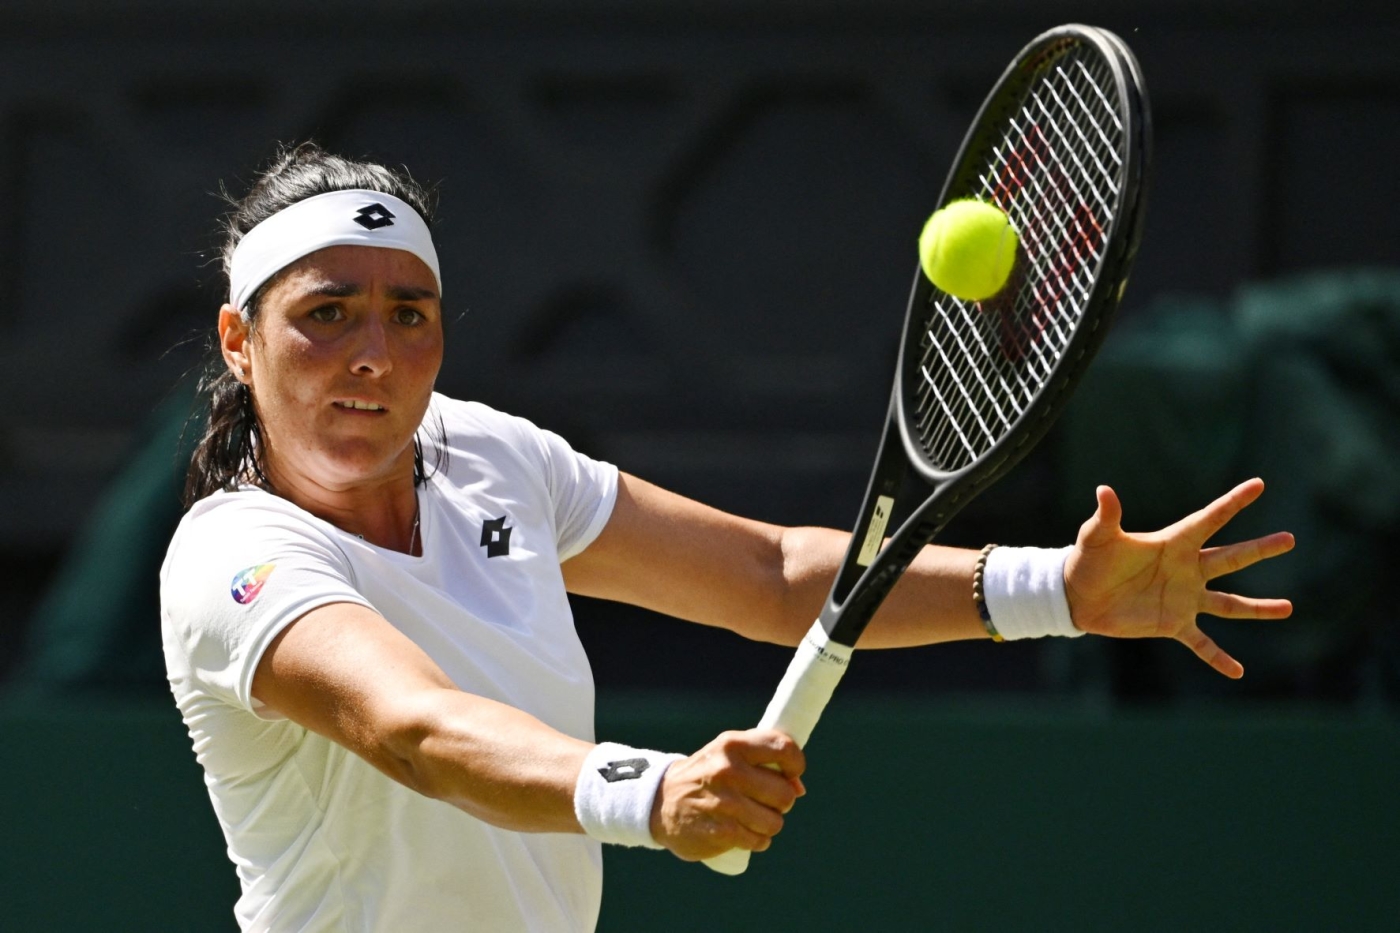 La tenniswoman tunisienne Ons Jabeur retourne le service de son adversaire, la Kazakhstanaise Elena Rybakina, en finale du tournoi simple dames de Wimbledon, le 9 juillet 2022 à Londres (AFP)